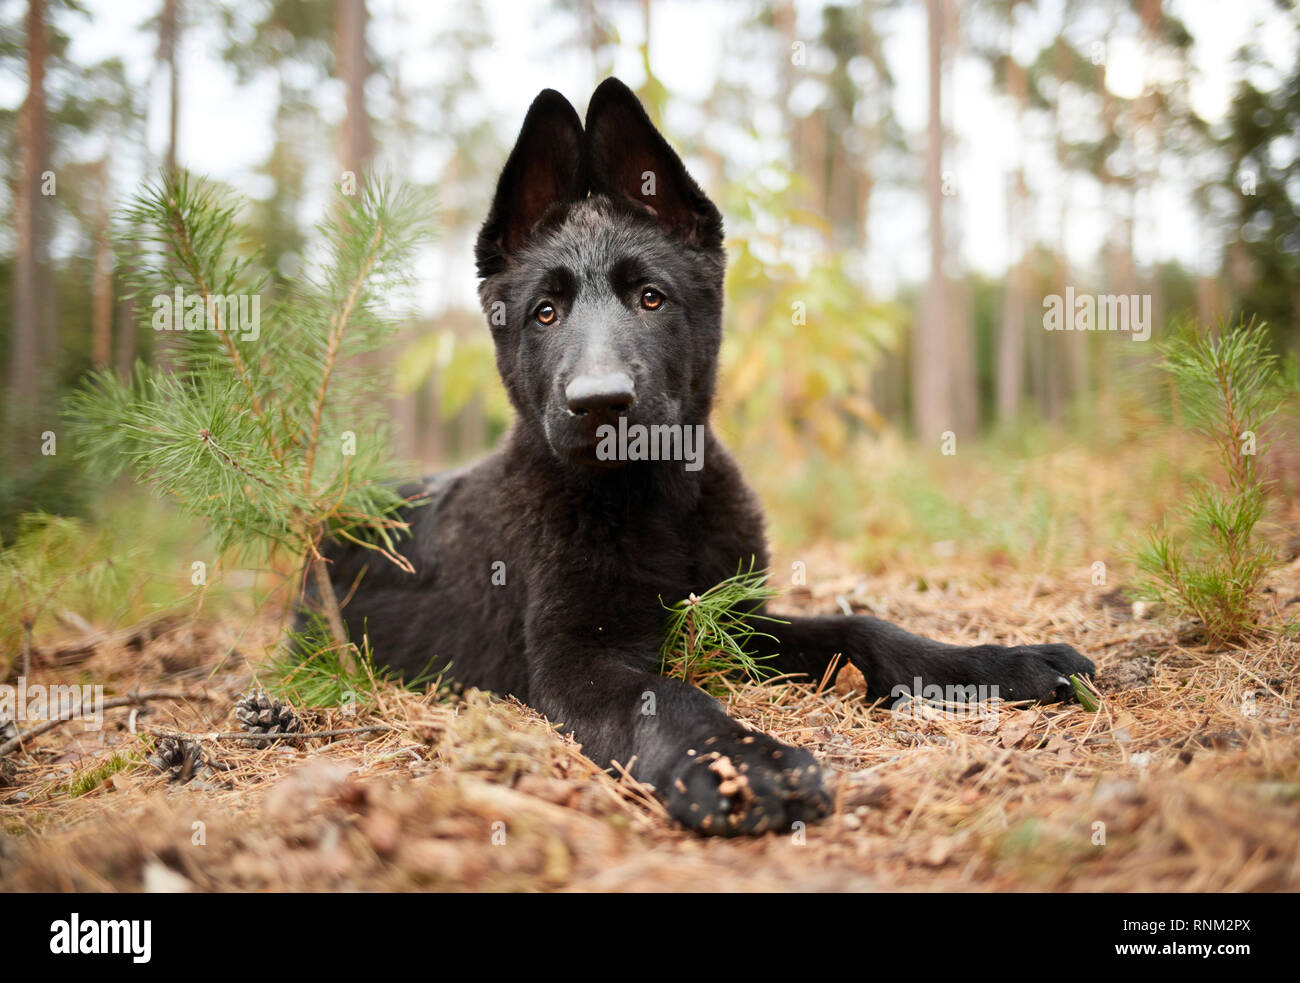 German Shepherd, Alsatian. Black puppy lying in a forest. Germany Stock Photo